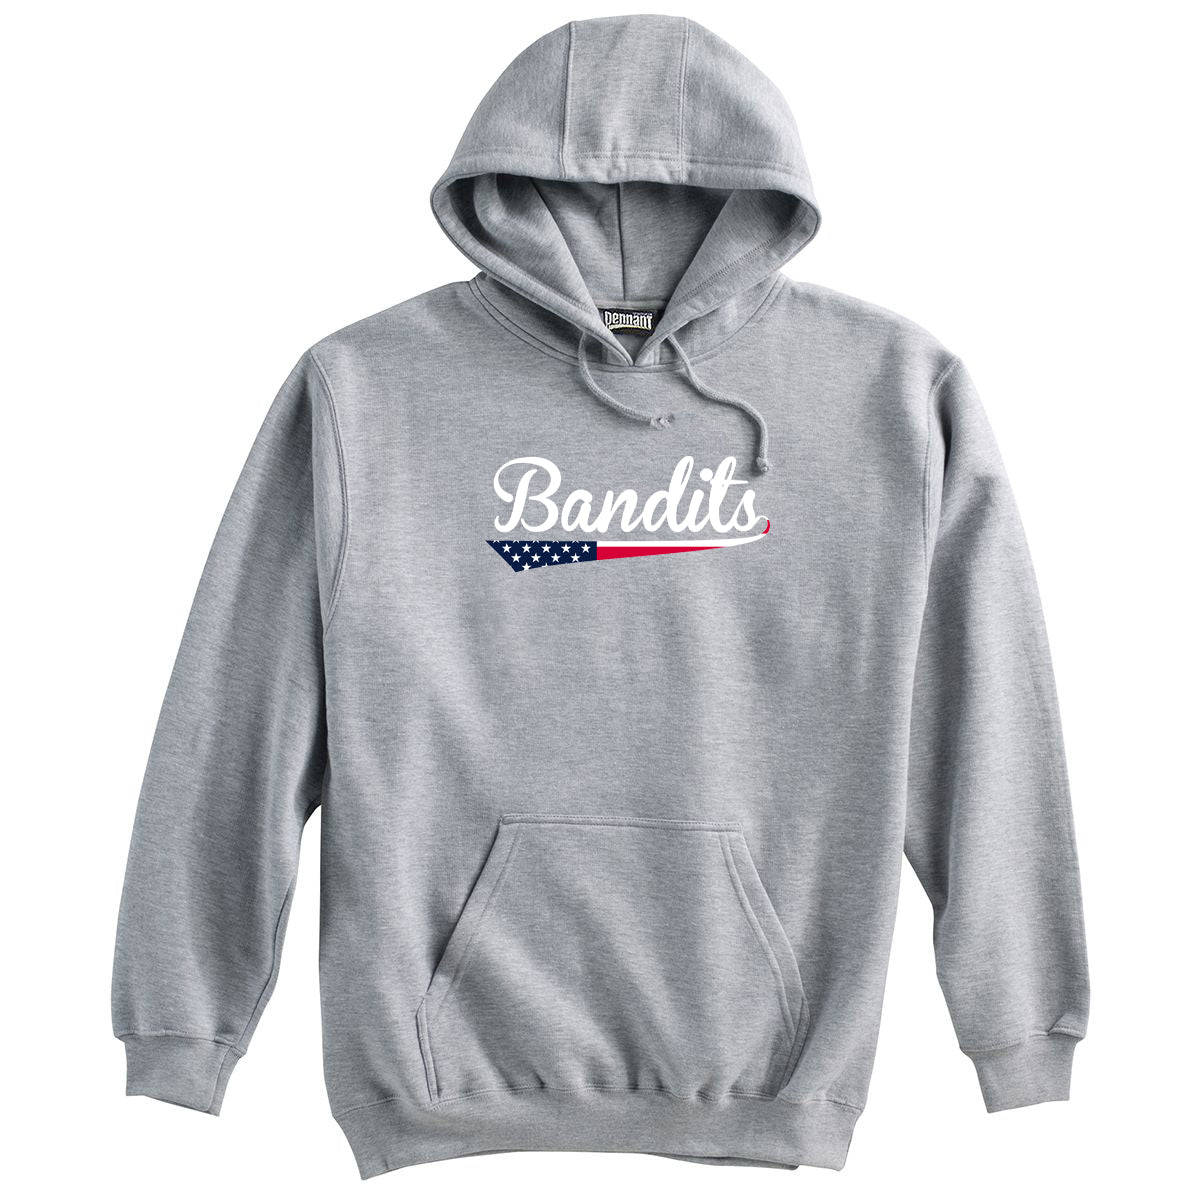 Bandits Baseball Sweatshirt